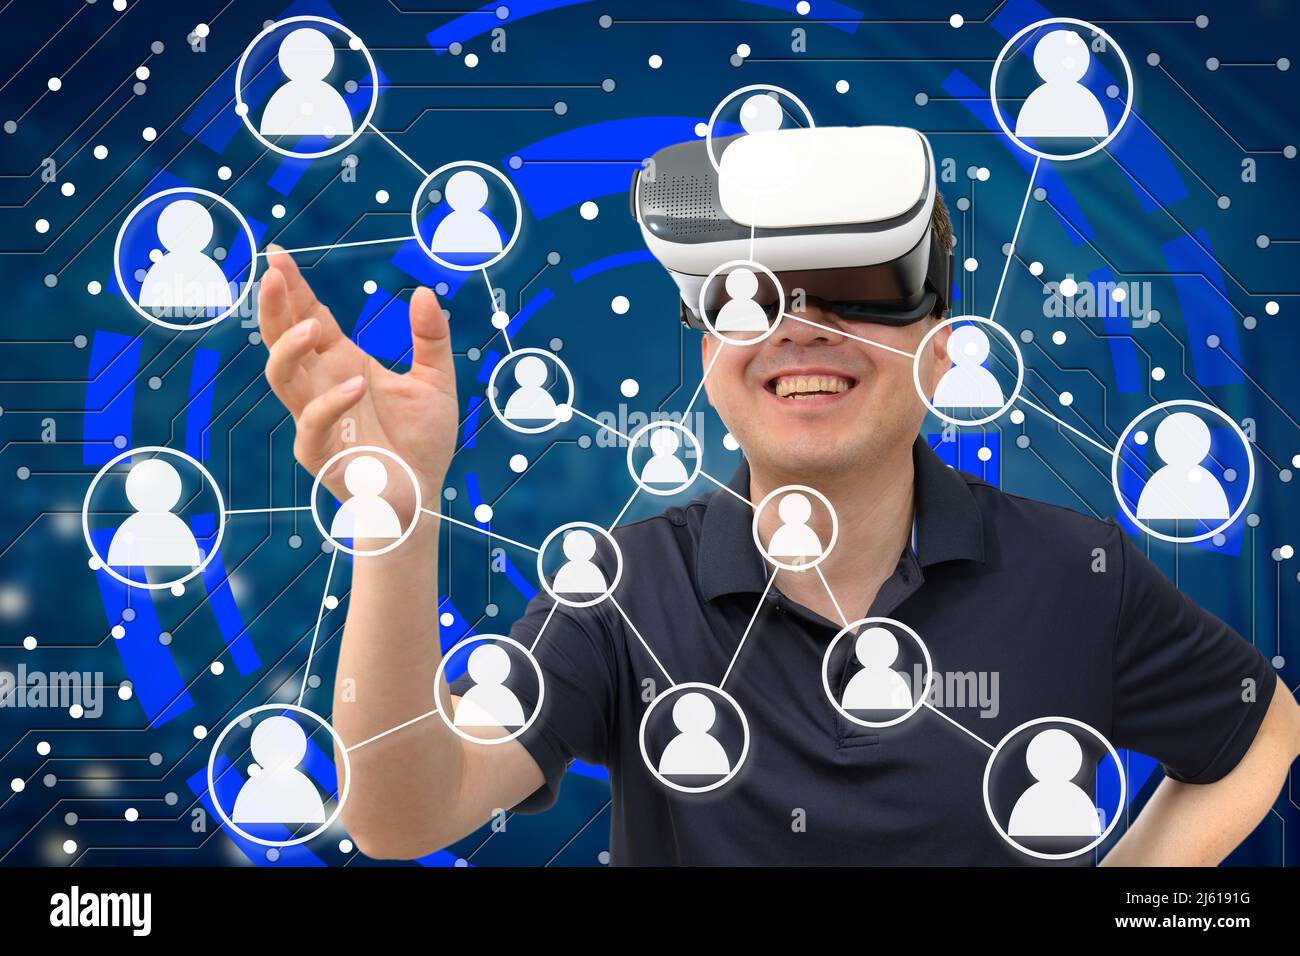 Un hombre que lleva puesto un auricular VR. Metaverse, concepto de sociedad virtual cibernética Foto de stock